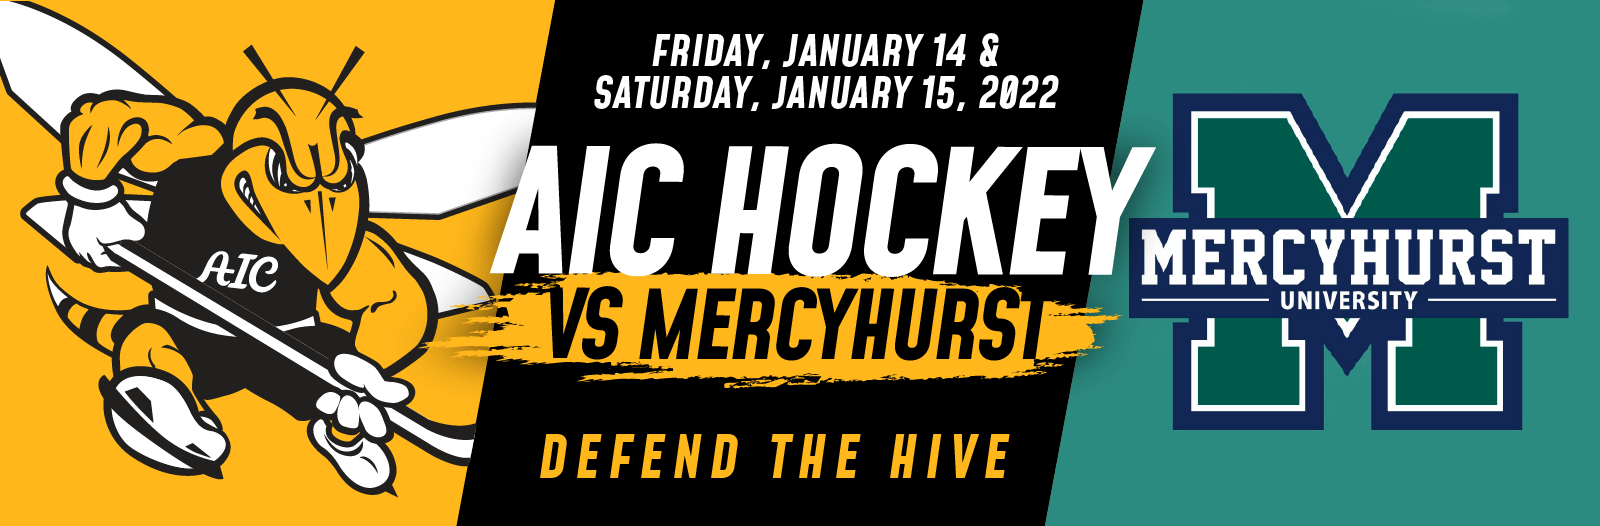 AIC Men's Hockey vs. Mercyhurst University